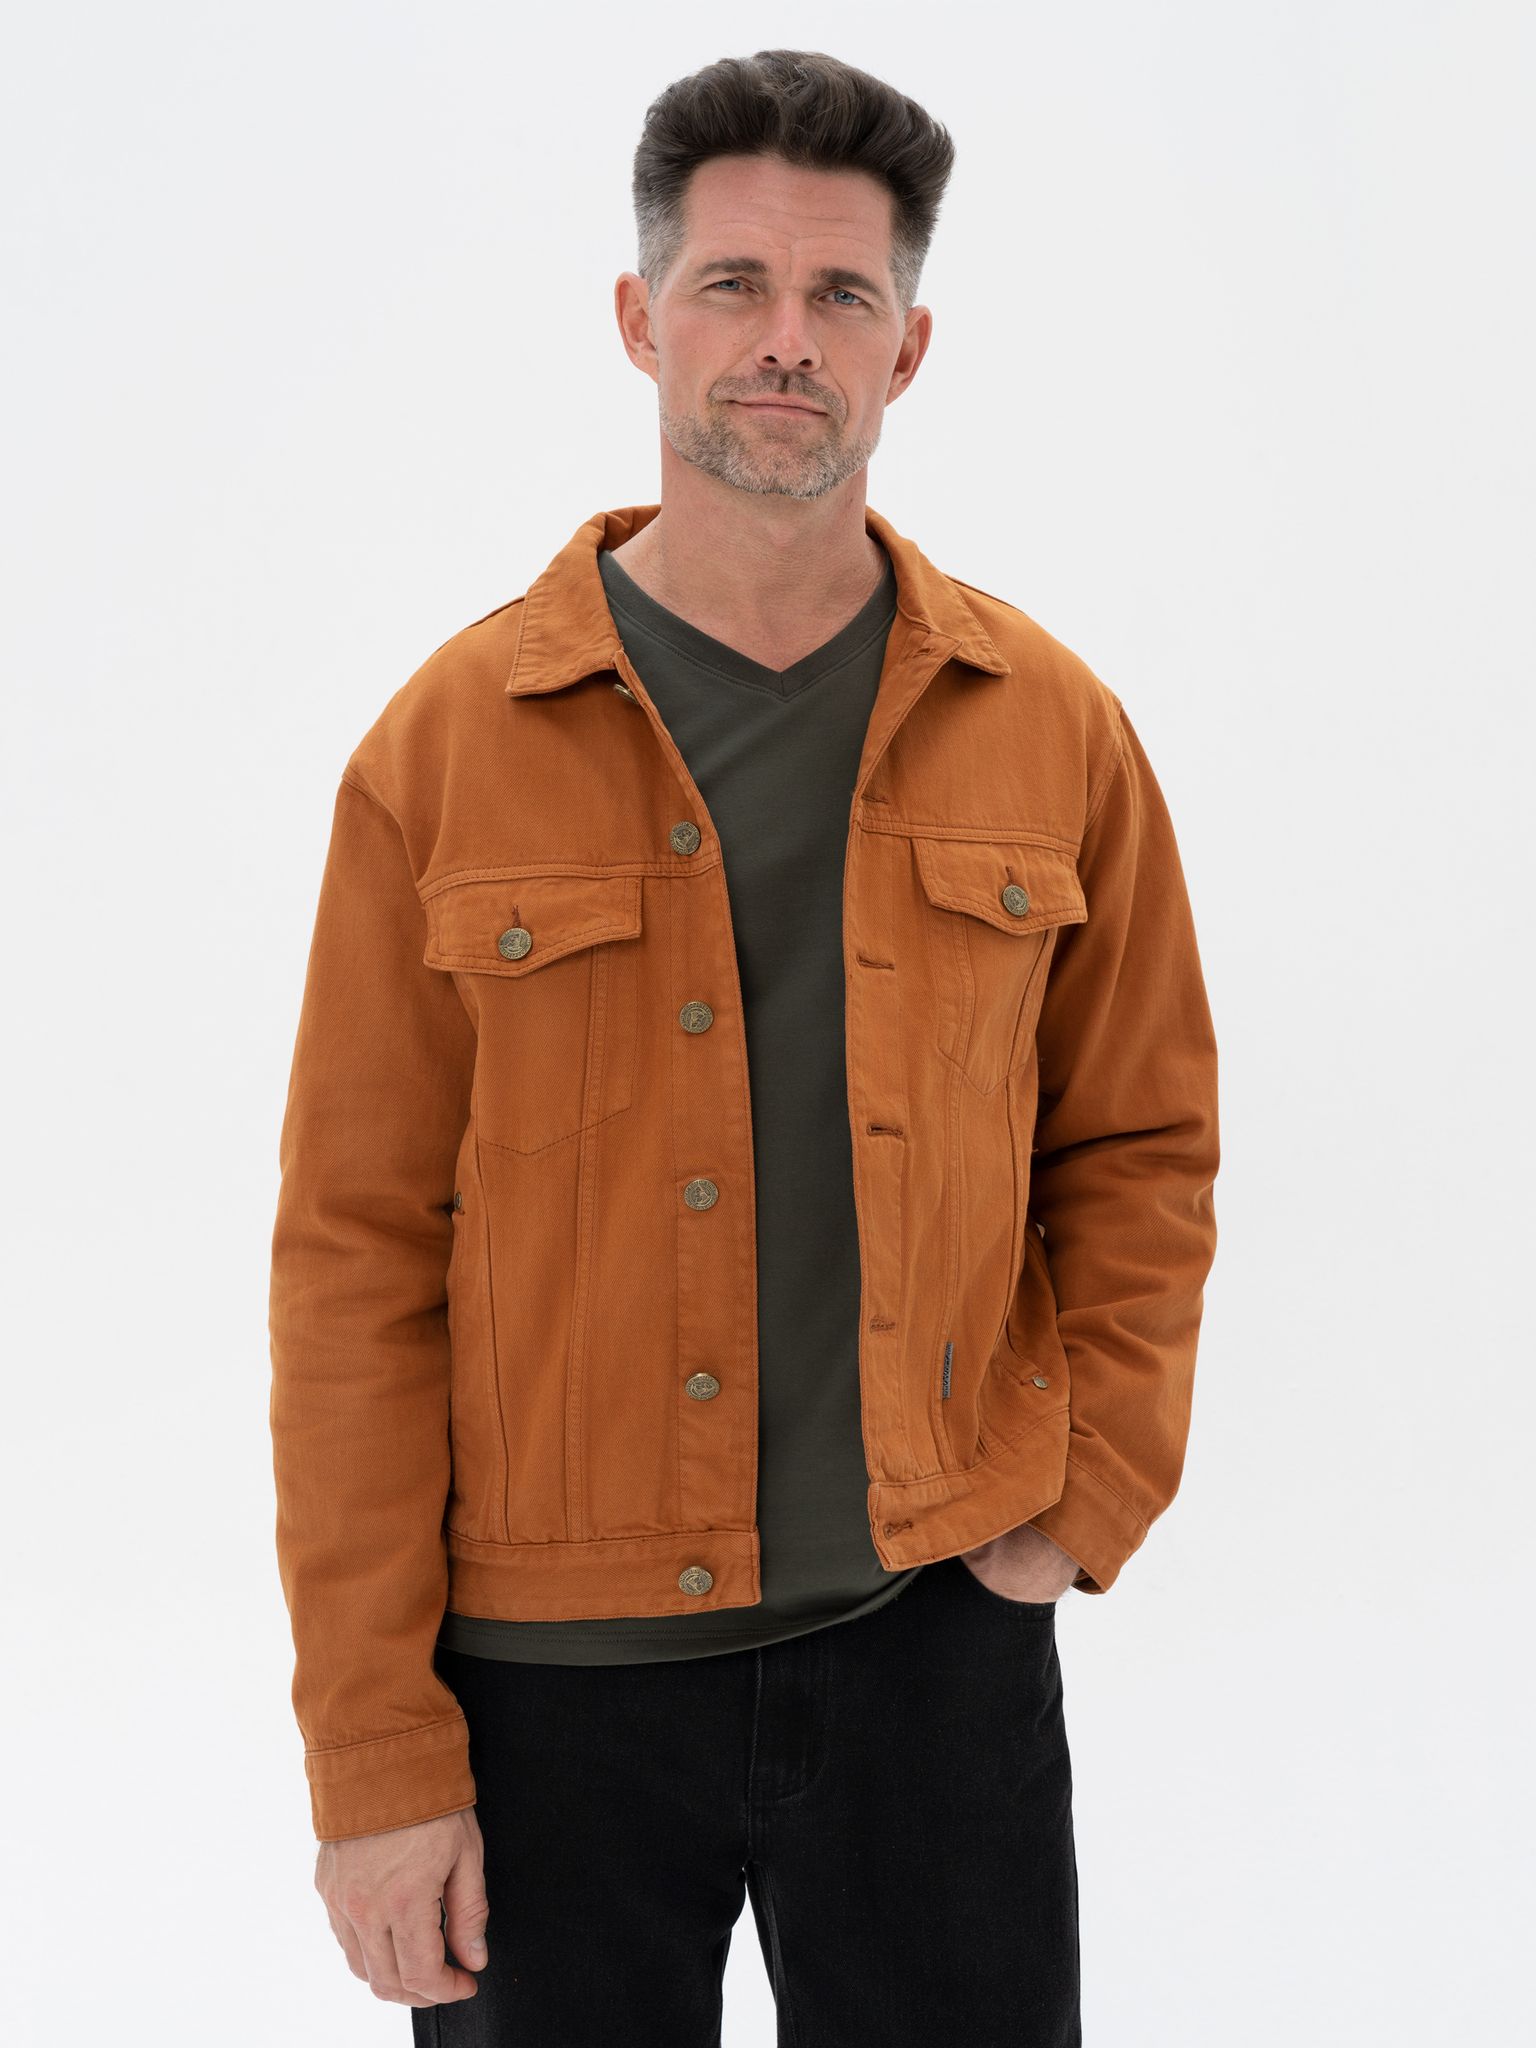 Джинсовая куртка мужская Великоросс JJ коричневая 48/168-178 RU